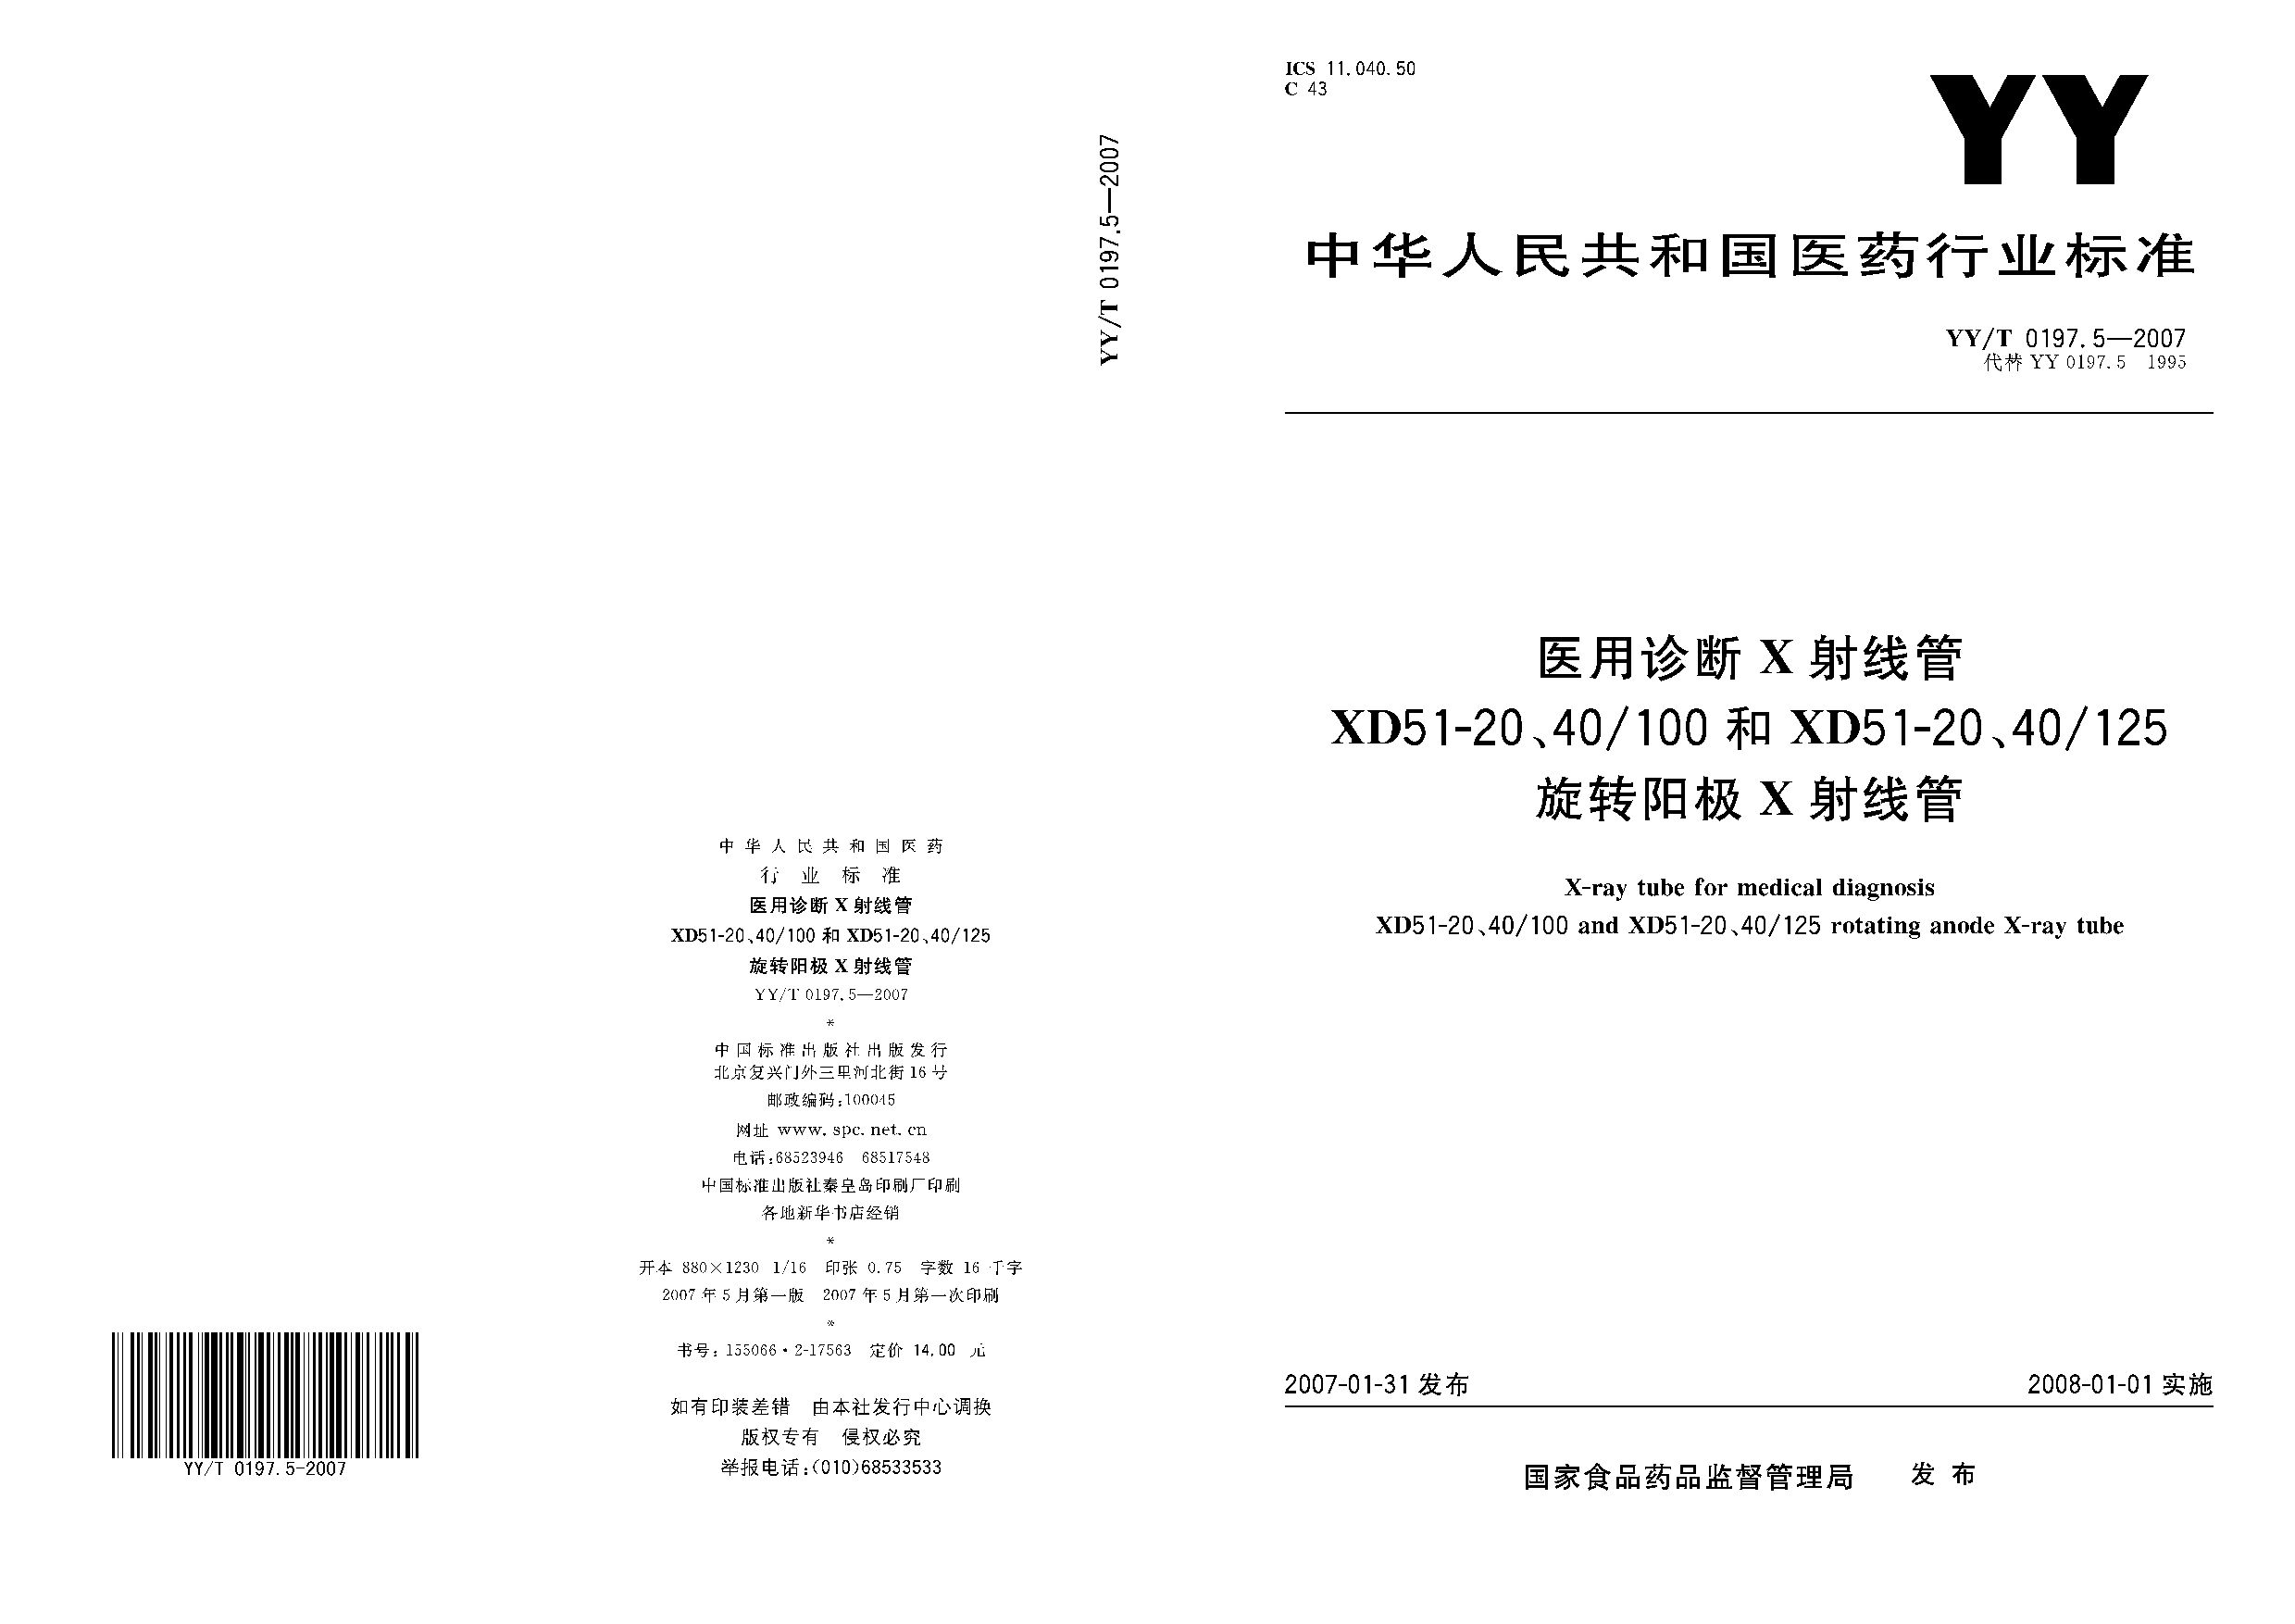 YY/T 0197.5-2007封面图